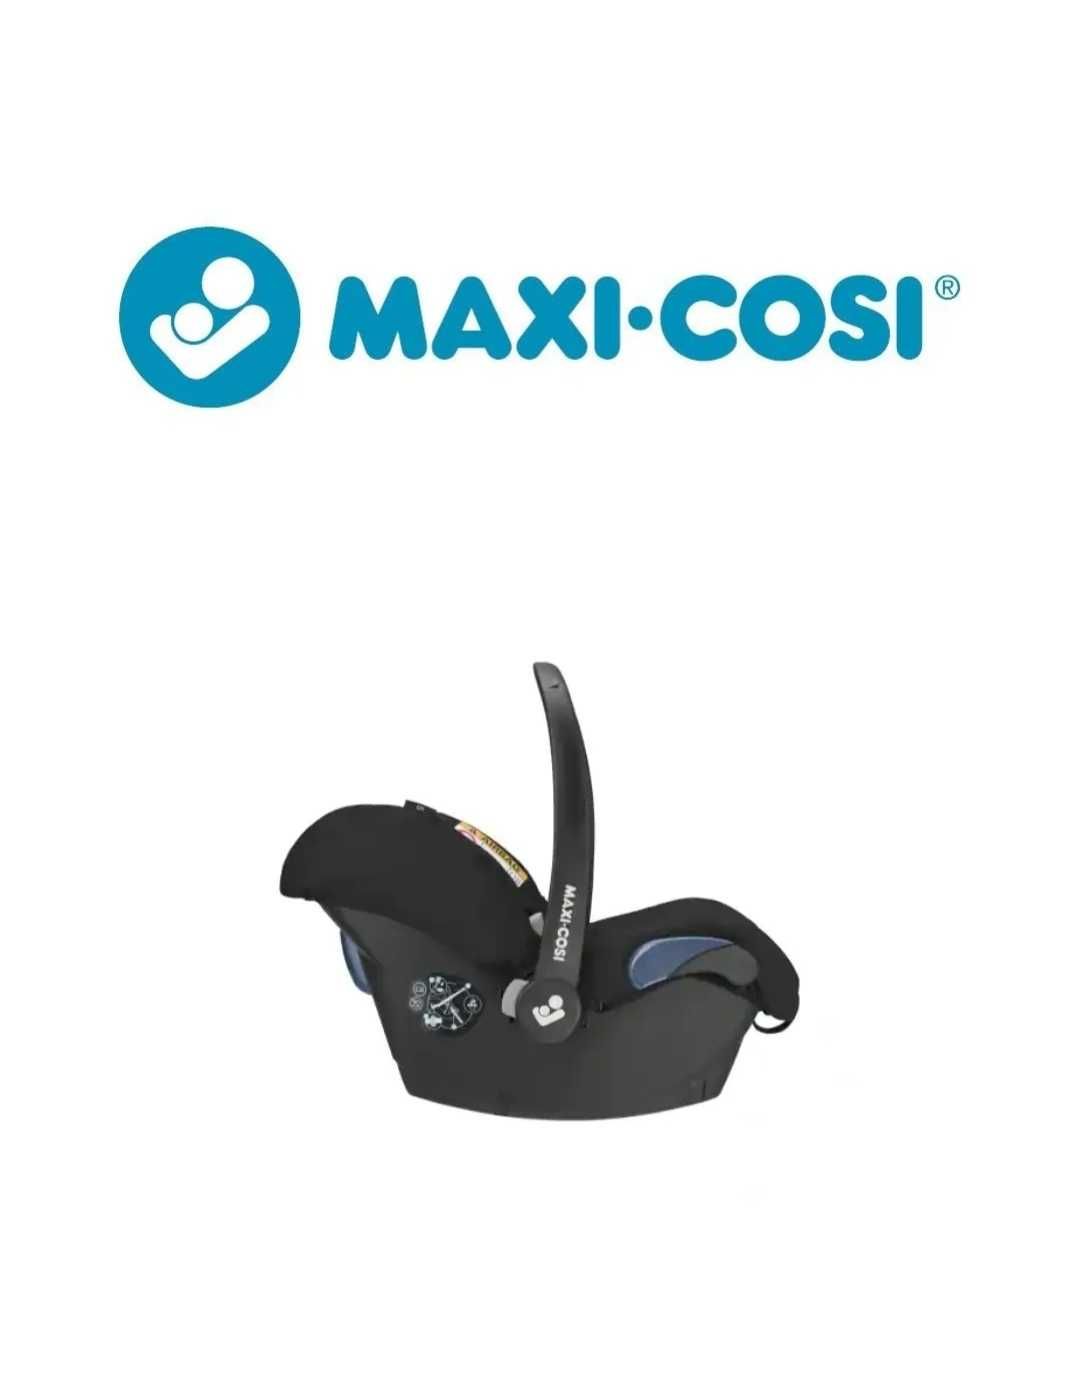 Maxi Cosi CITY 0- 13 kg Fotelik Samochodowy Niemowlat Dzieci Nosidełko